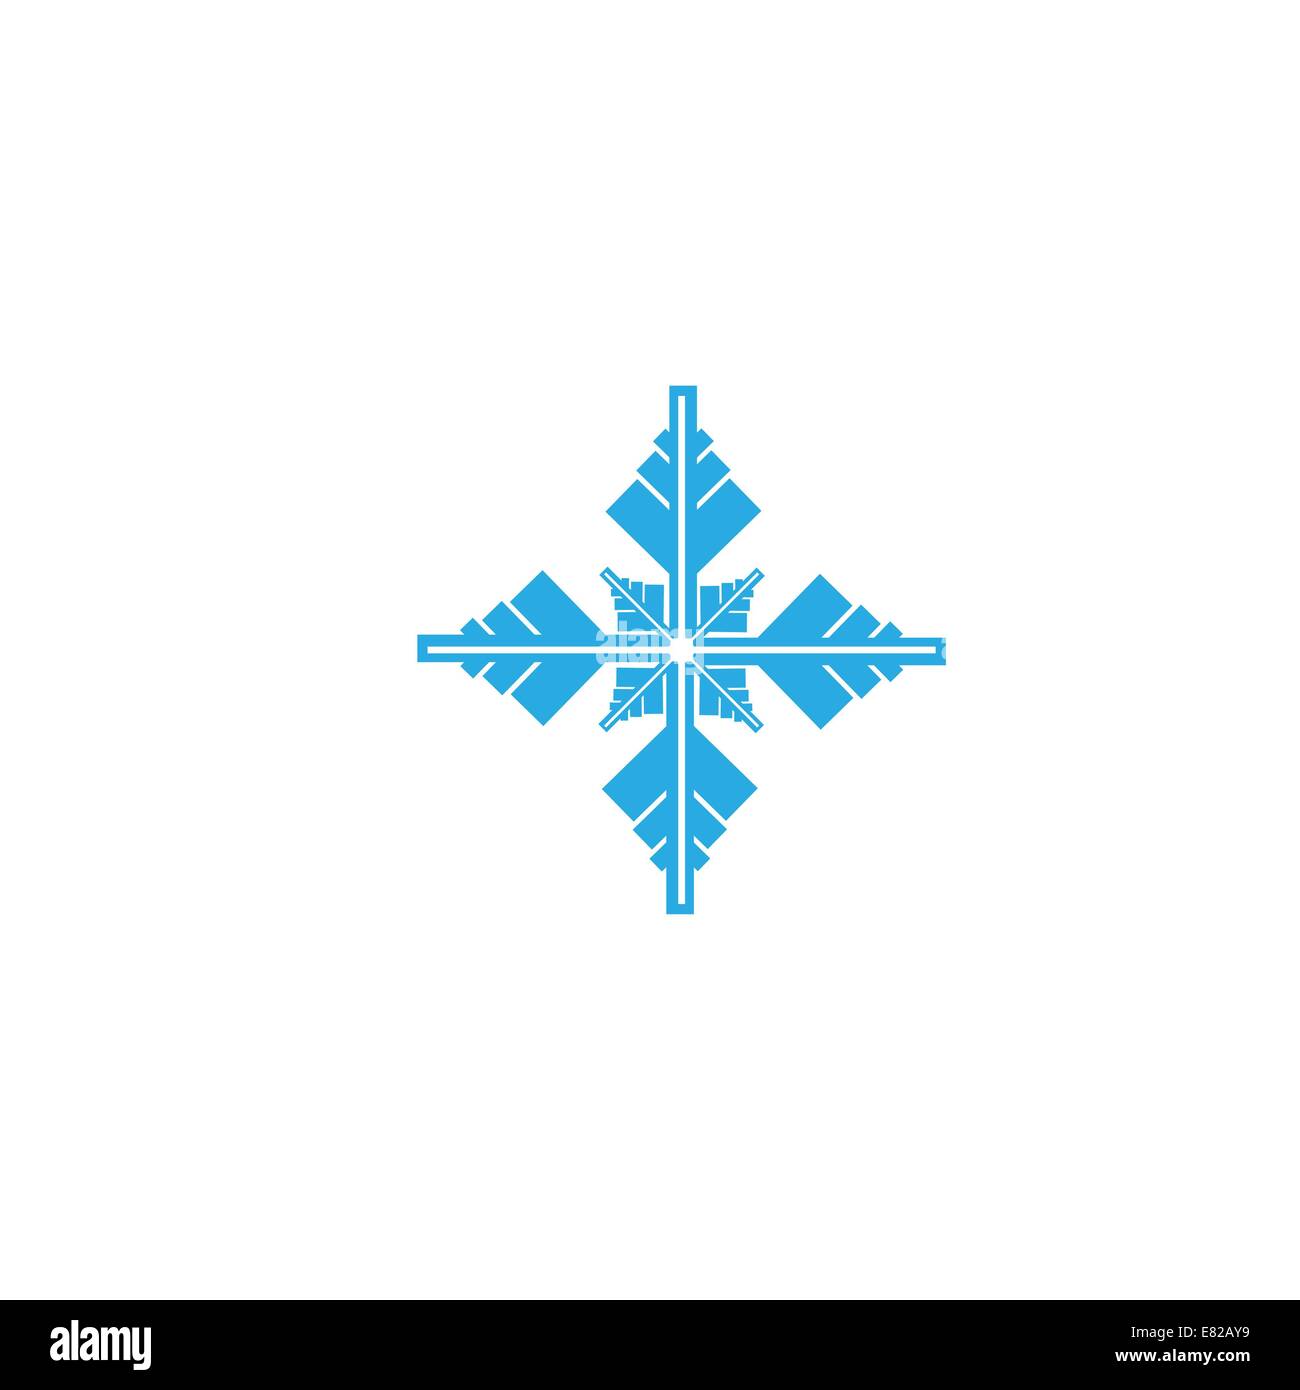 Delicato blu digitale design fiocco di neve Foto Stock